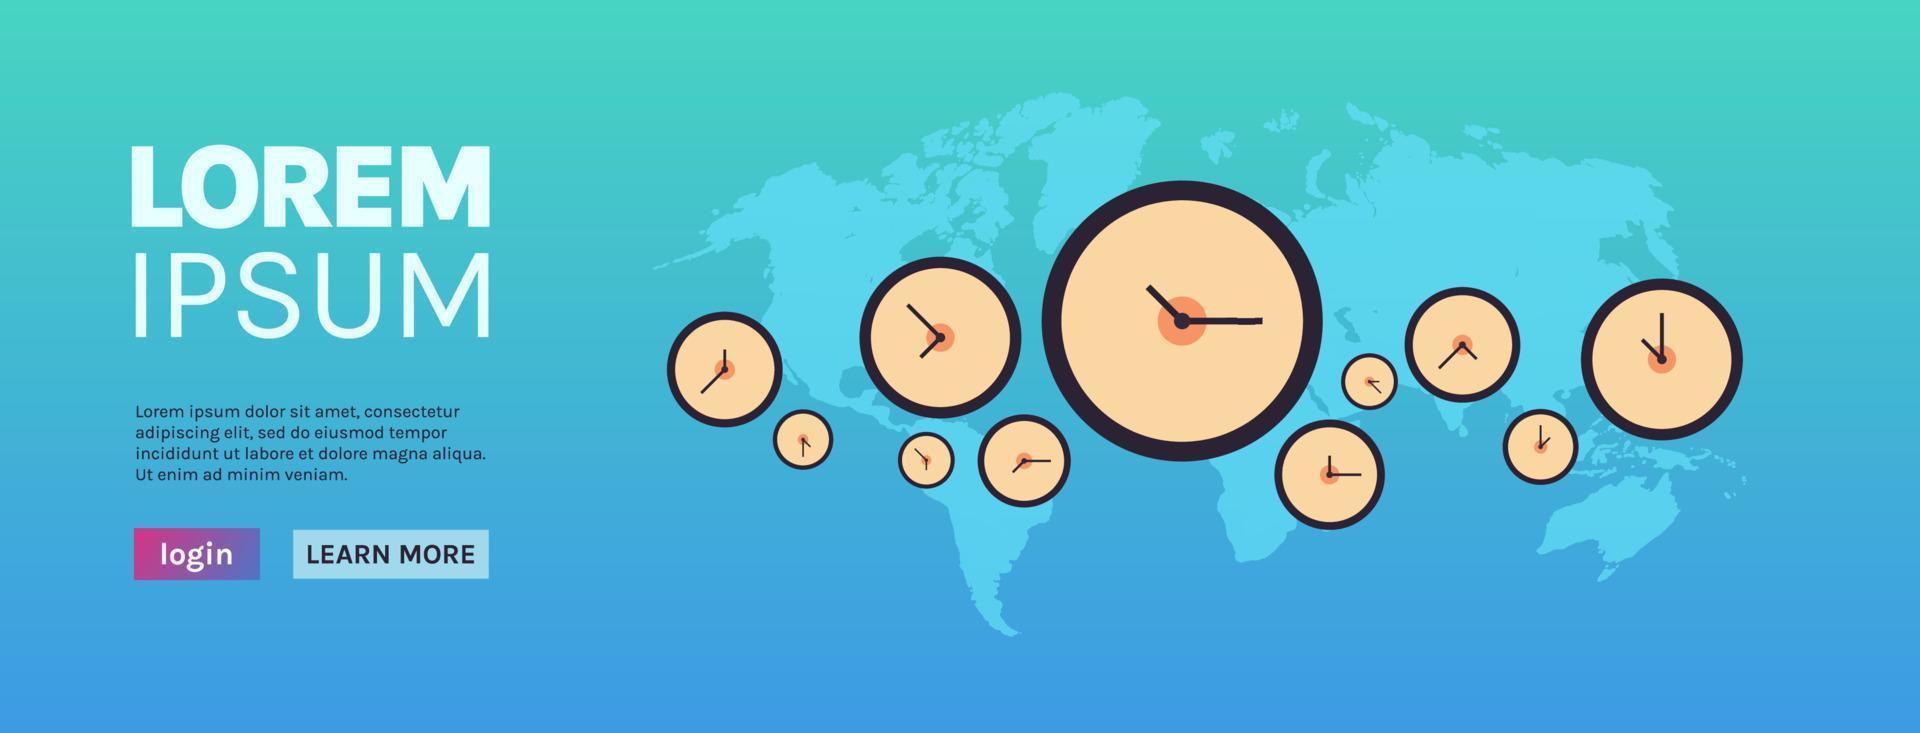 horloges différentes villes délai de gestion du temps et concept de fond de carte du monde illustration vectorielle plane horizontale. vecteur